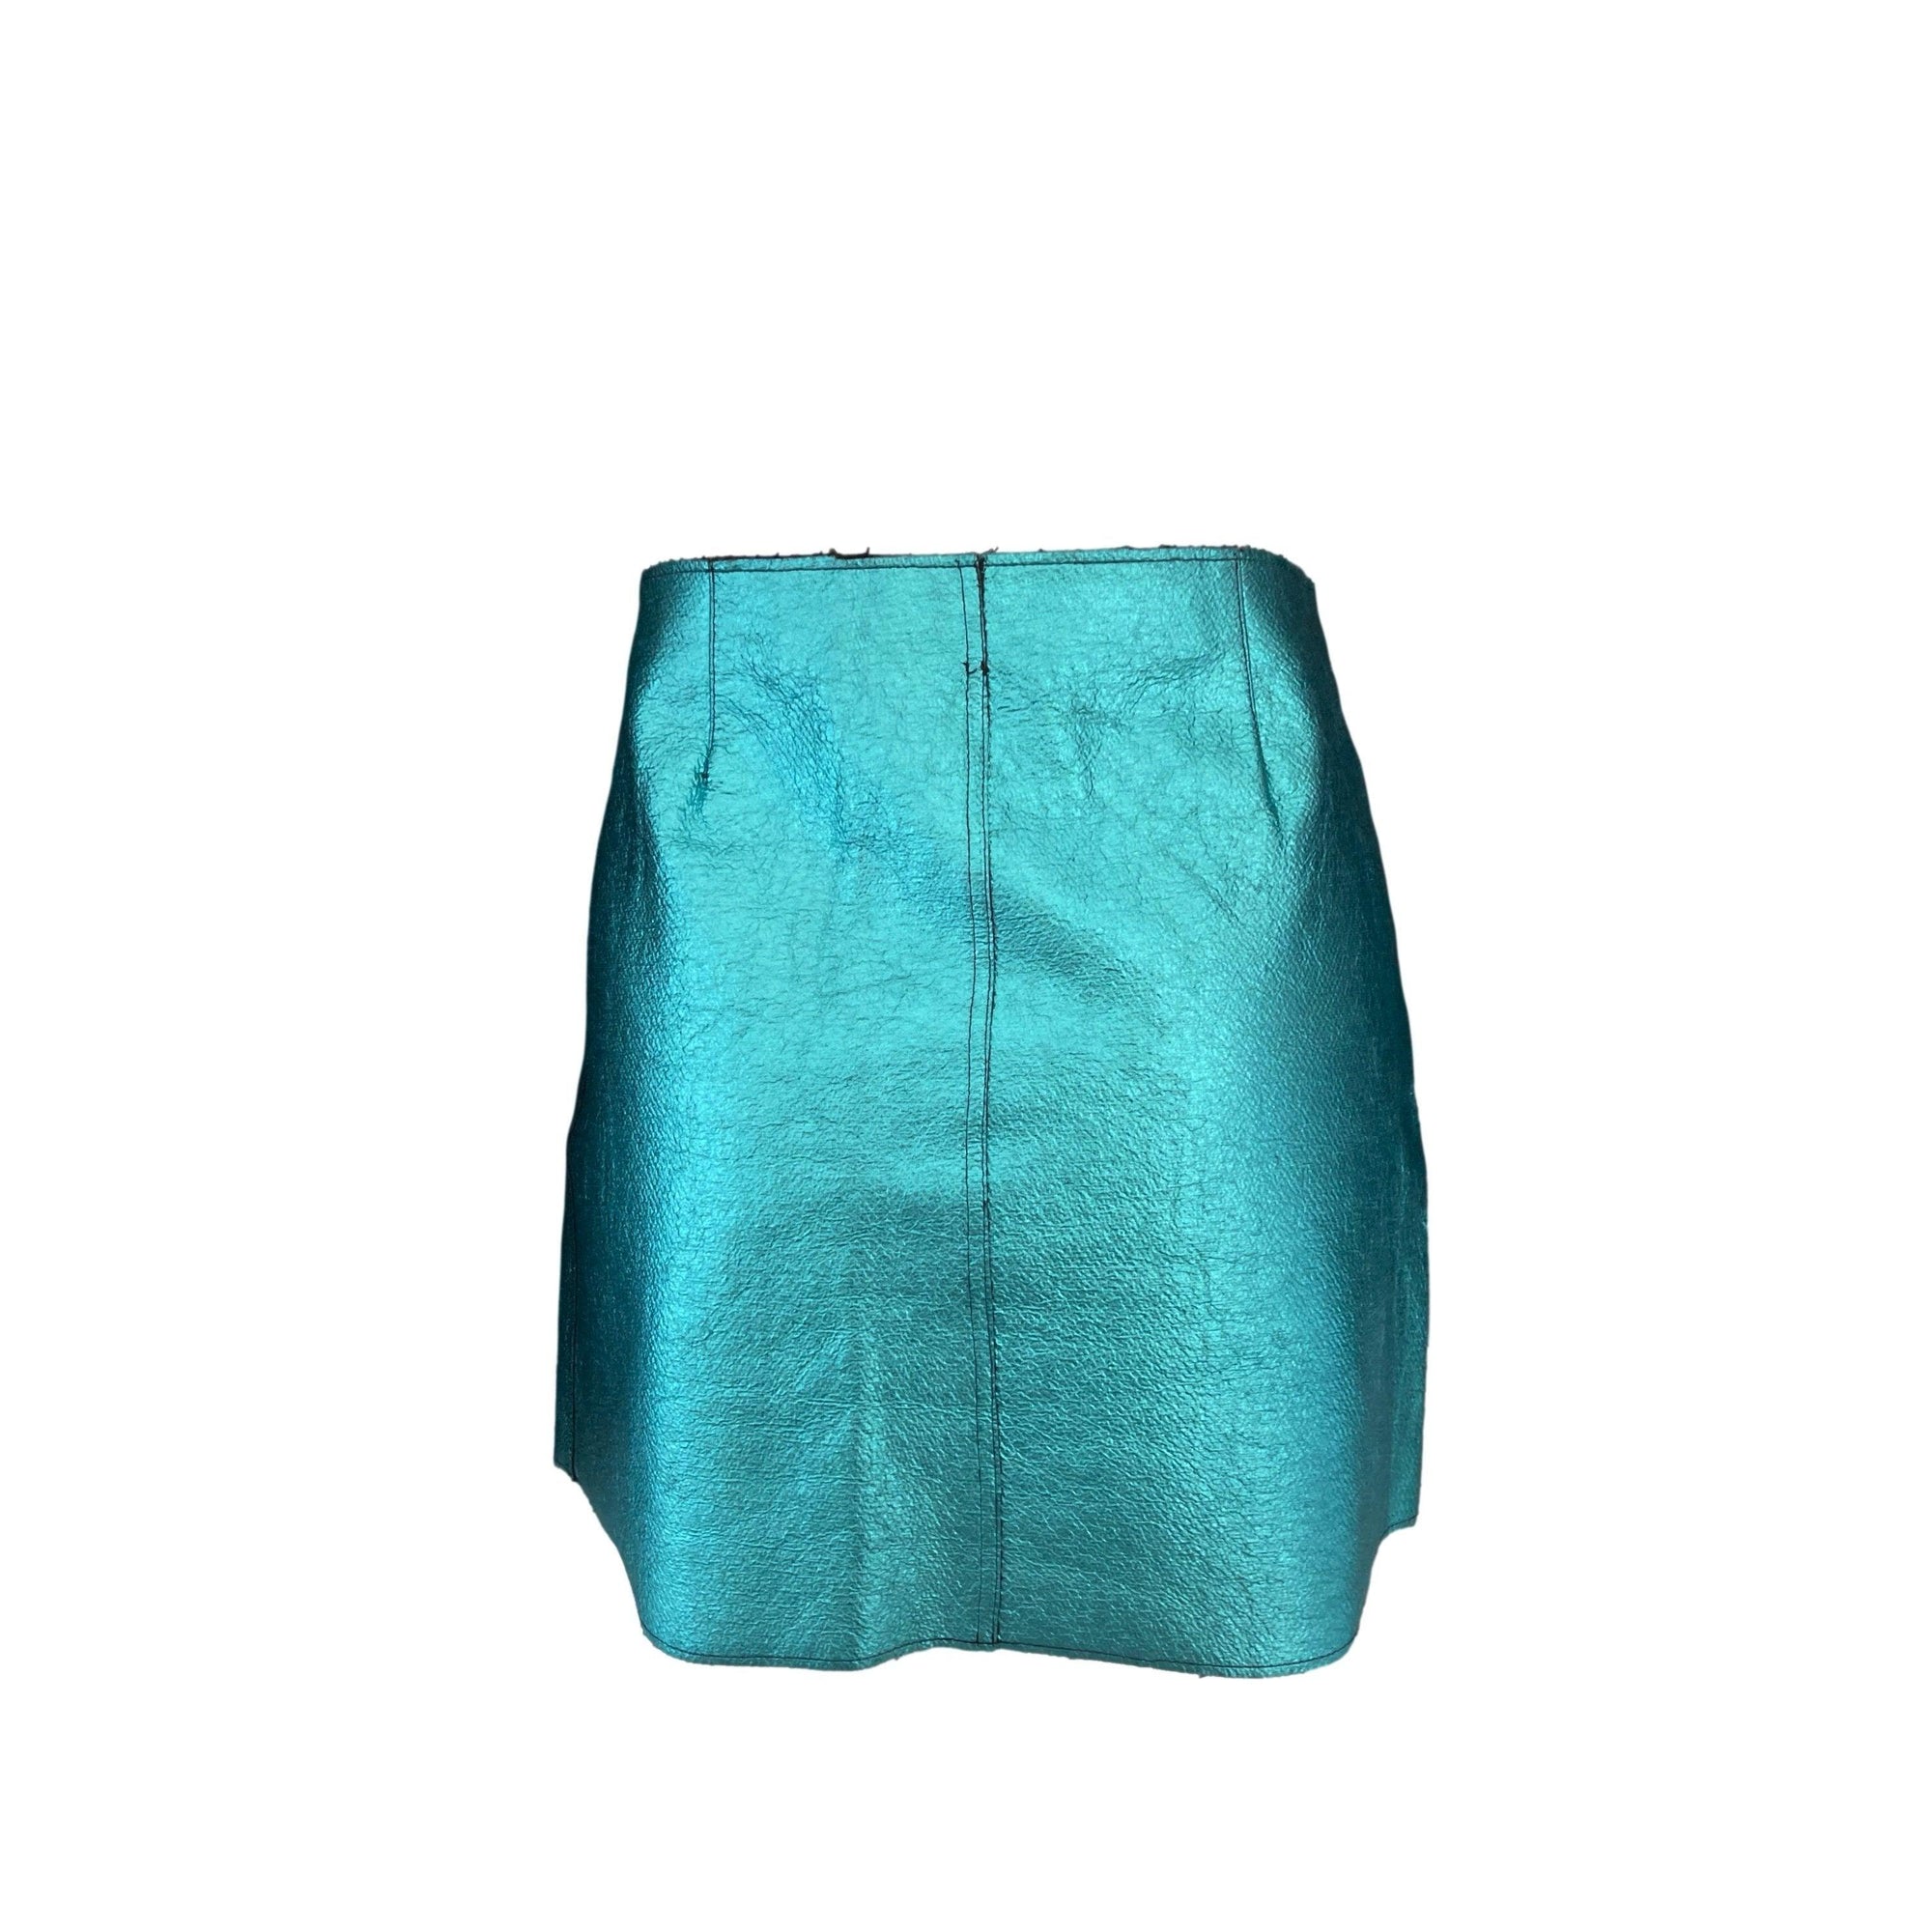 Dolce & Gabbana Metallic Blue Textured Skirt - Apparel